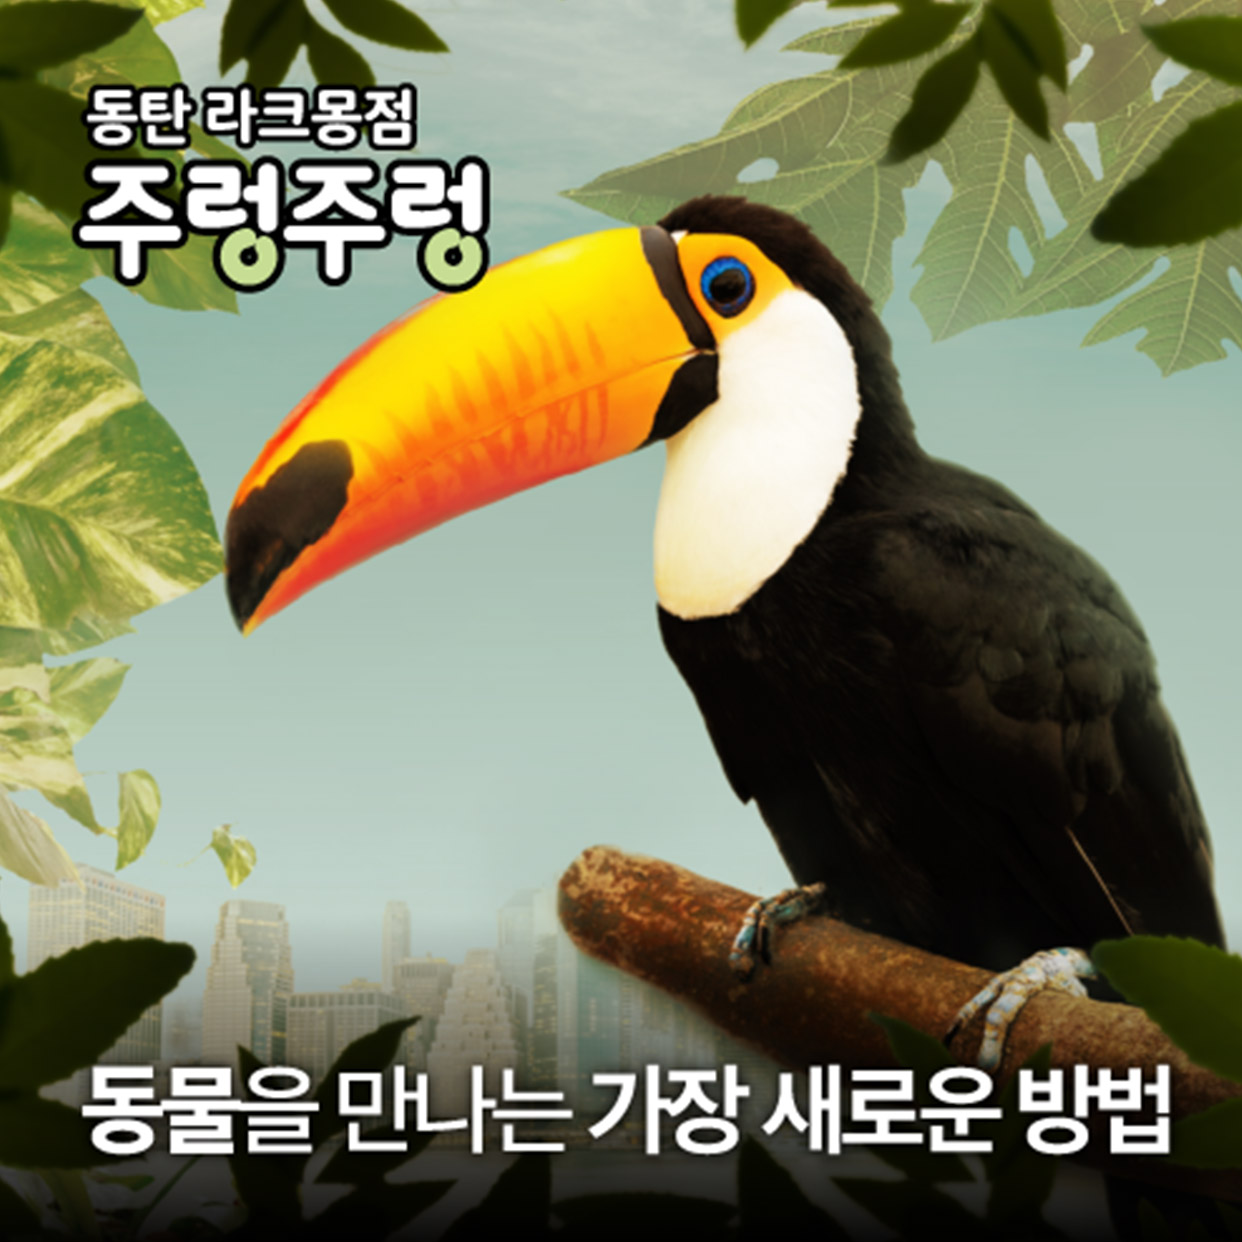 [경기]주렁주렁 실내 동물원 동탄점